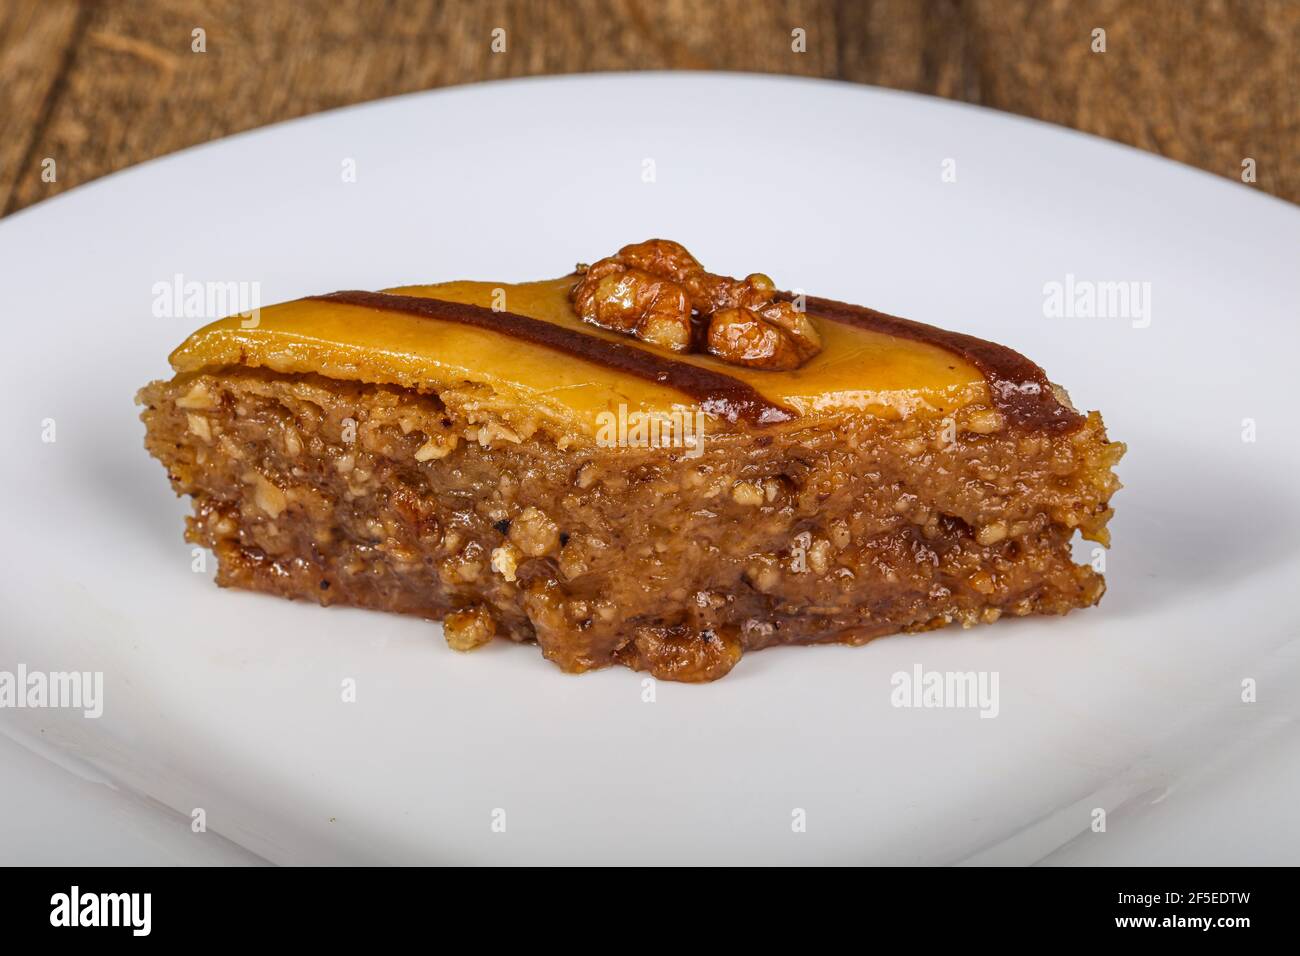 Türkische Delight Baklava mit Honig und Nuss Stockfotografie - Alamy